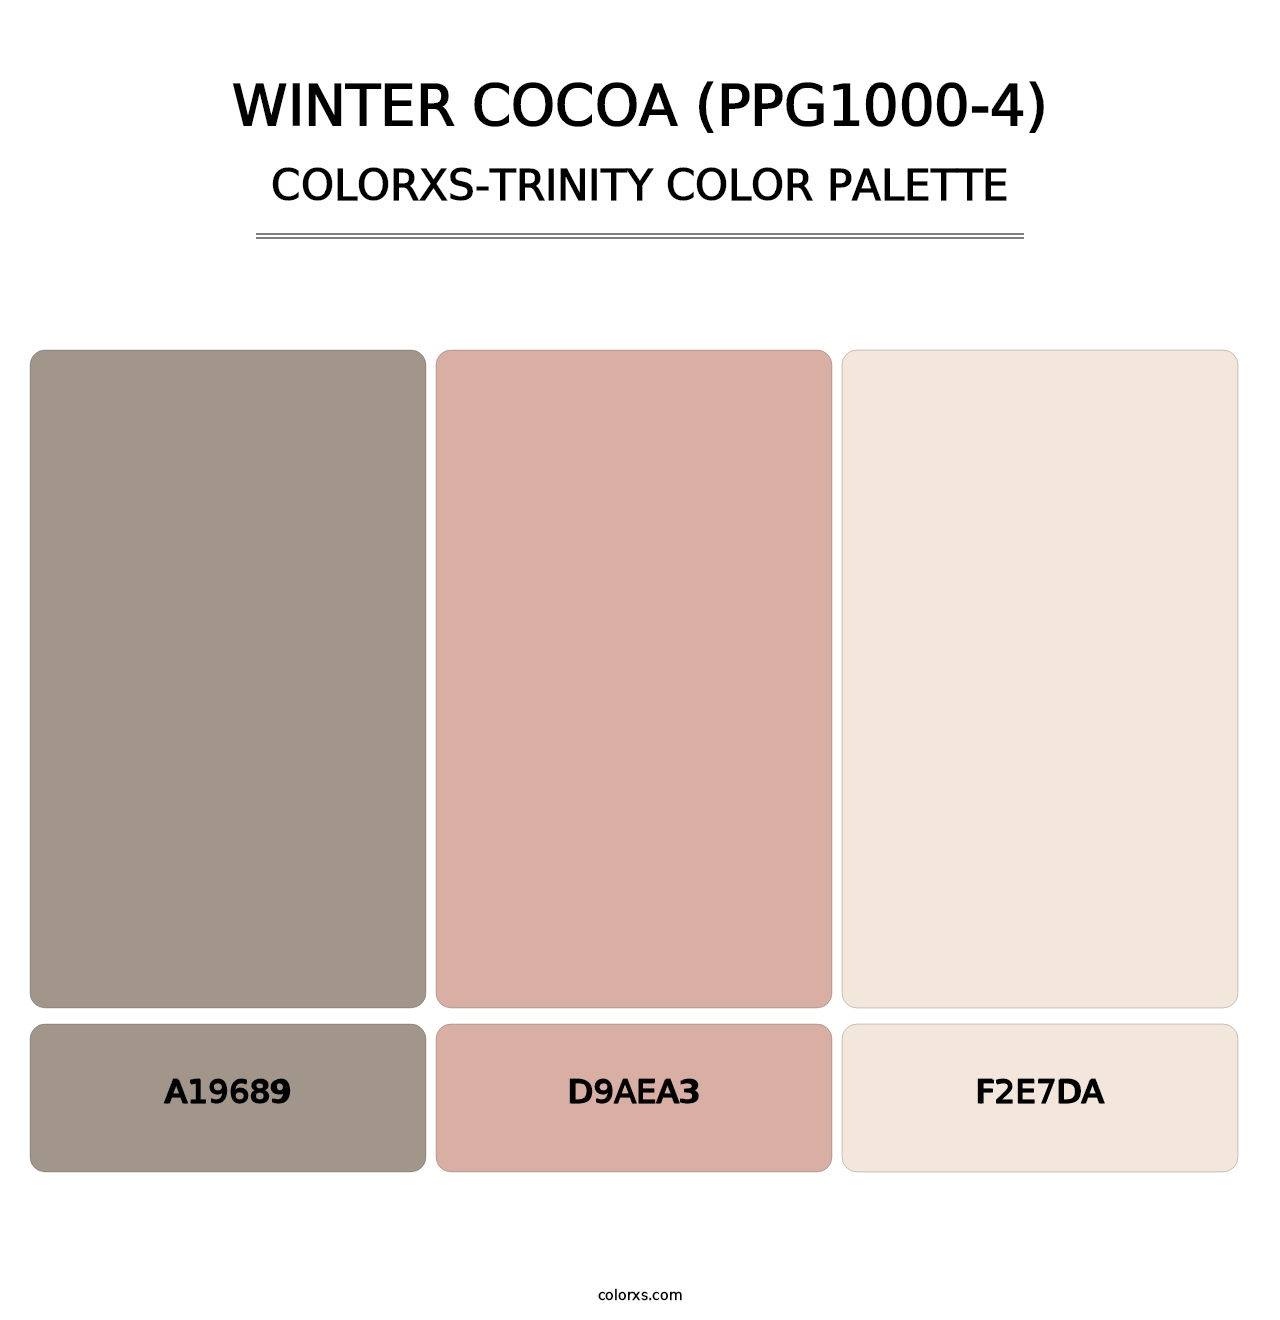 Winter Cocoa (PPG1000-4) - Colorxs Trinity Palette